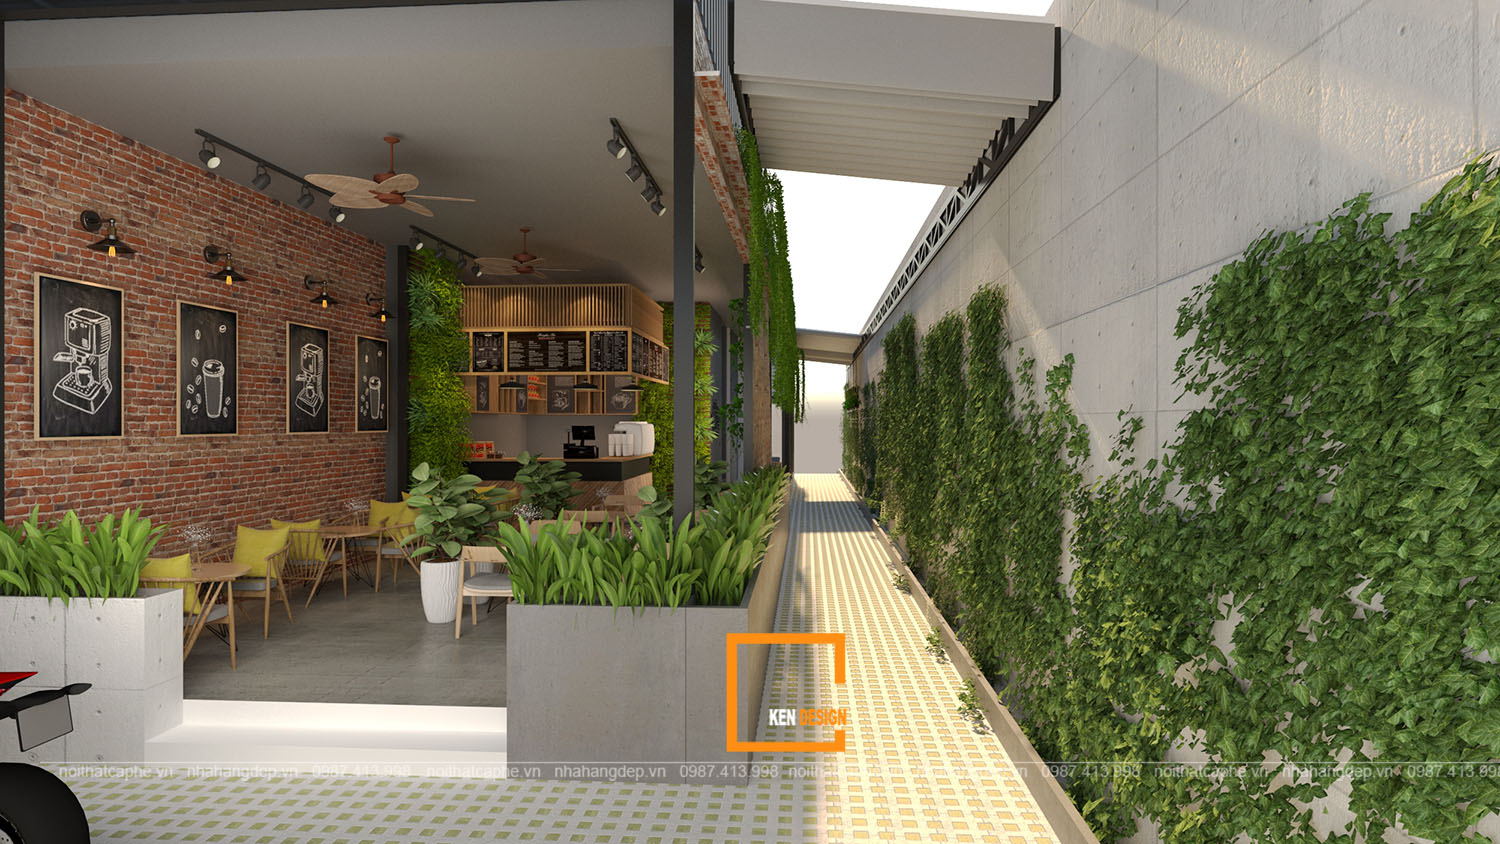 Đốn tim giới trẻ với ý tưởng thiết kế quán cafe sân vườn | Kendesign